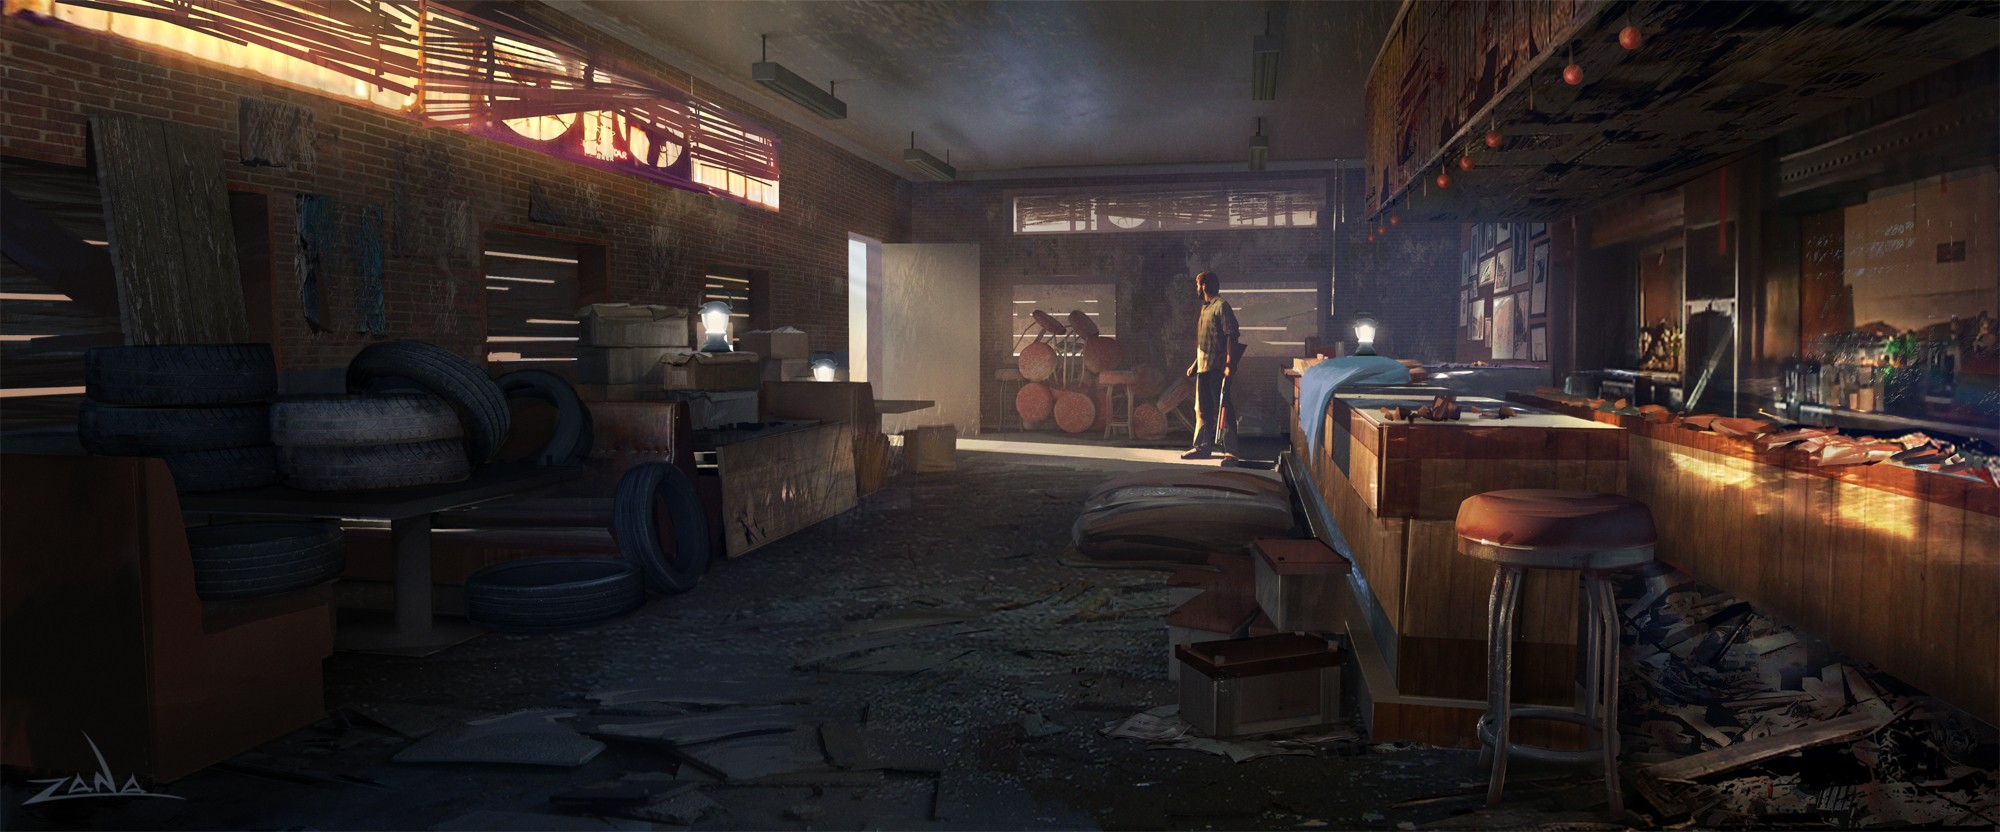 The Last Of Us, Concept Art, Video Games, Artwork, Digital 2D Wallpaper